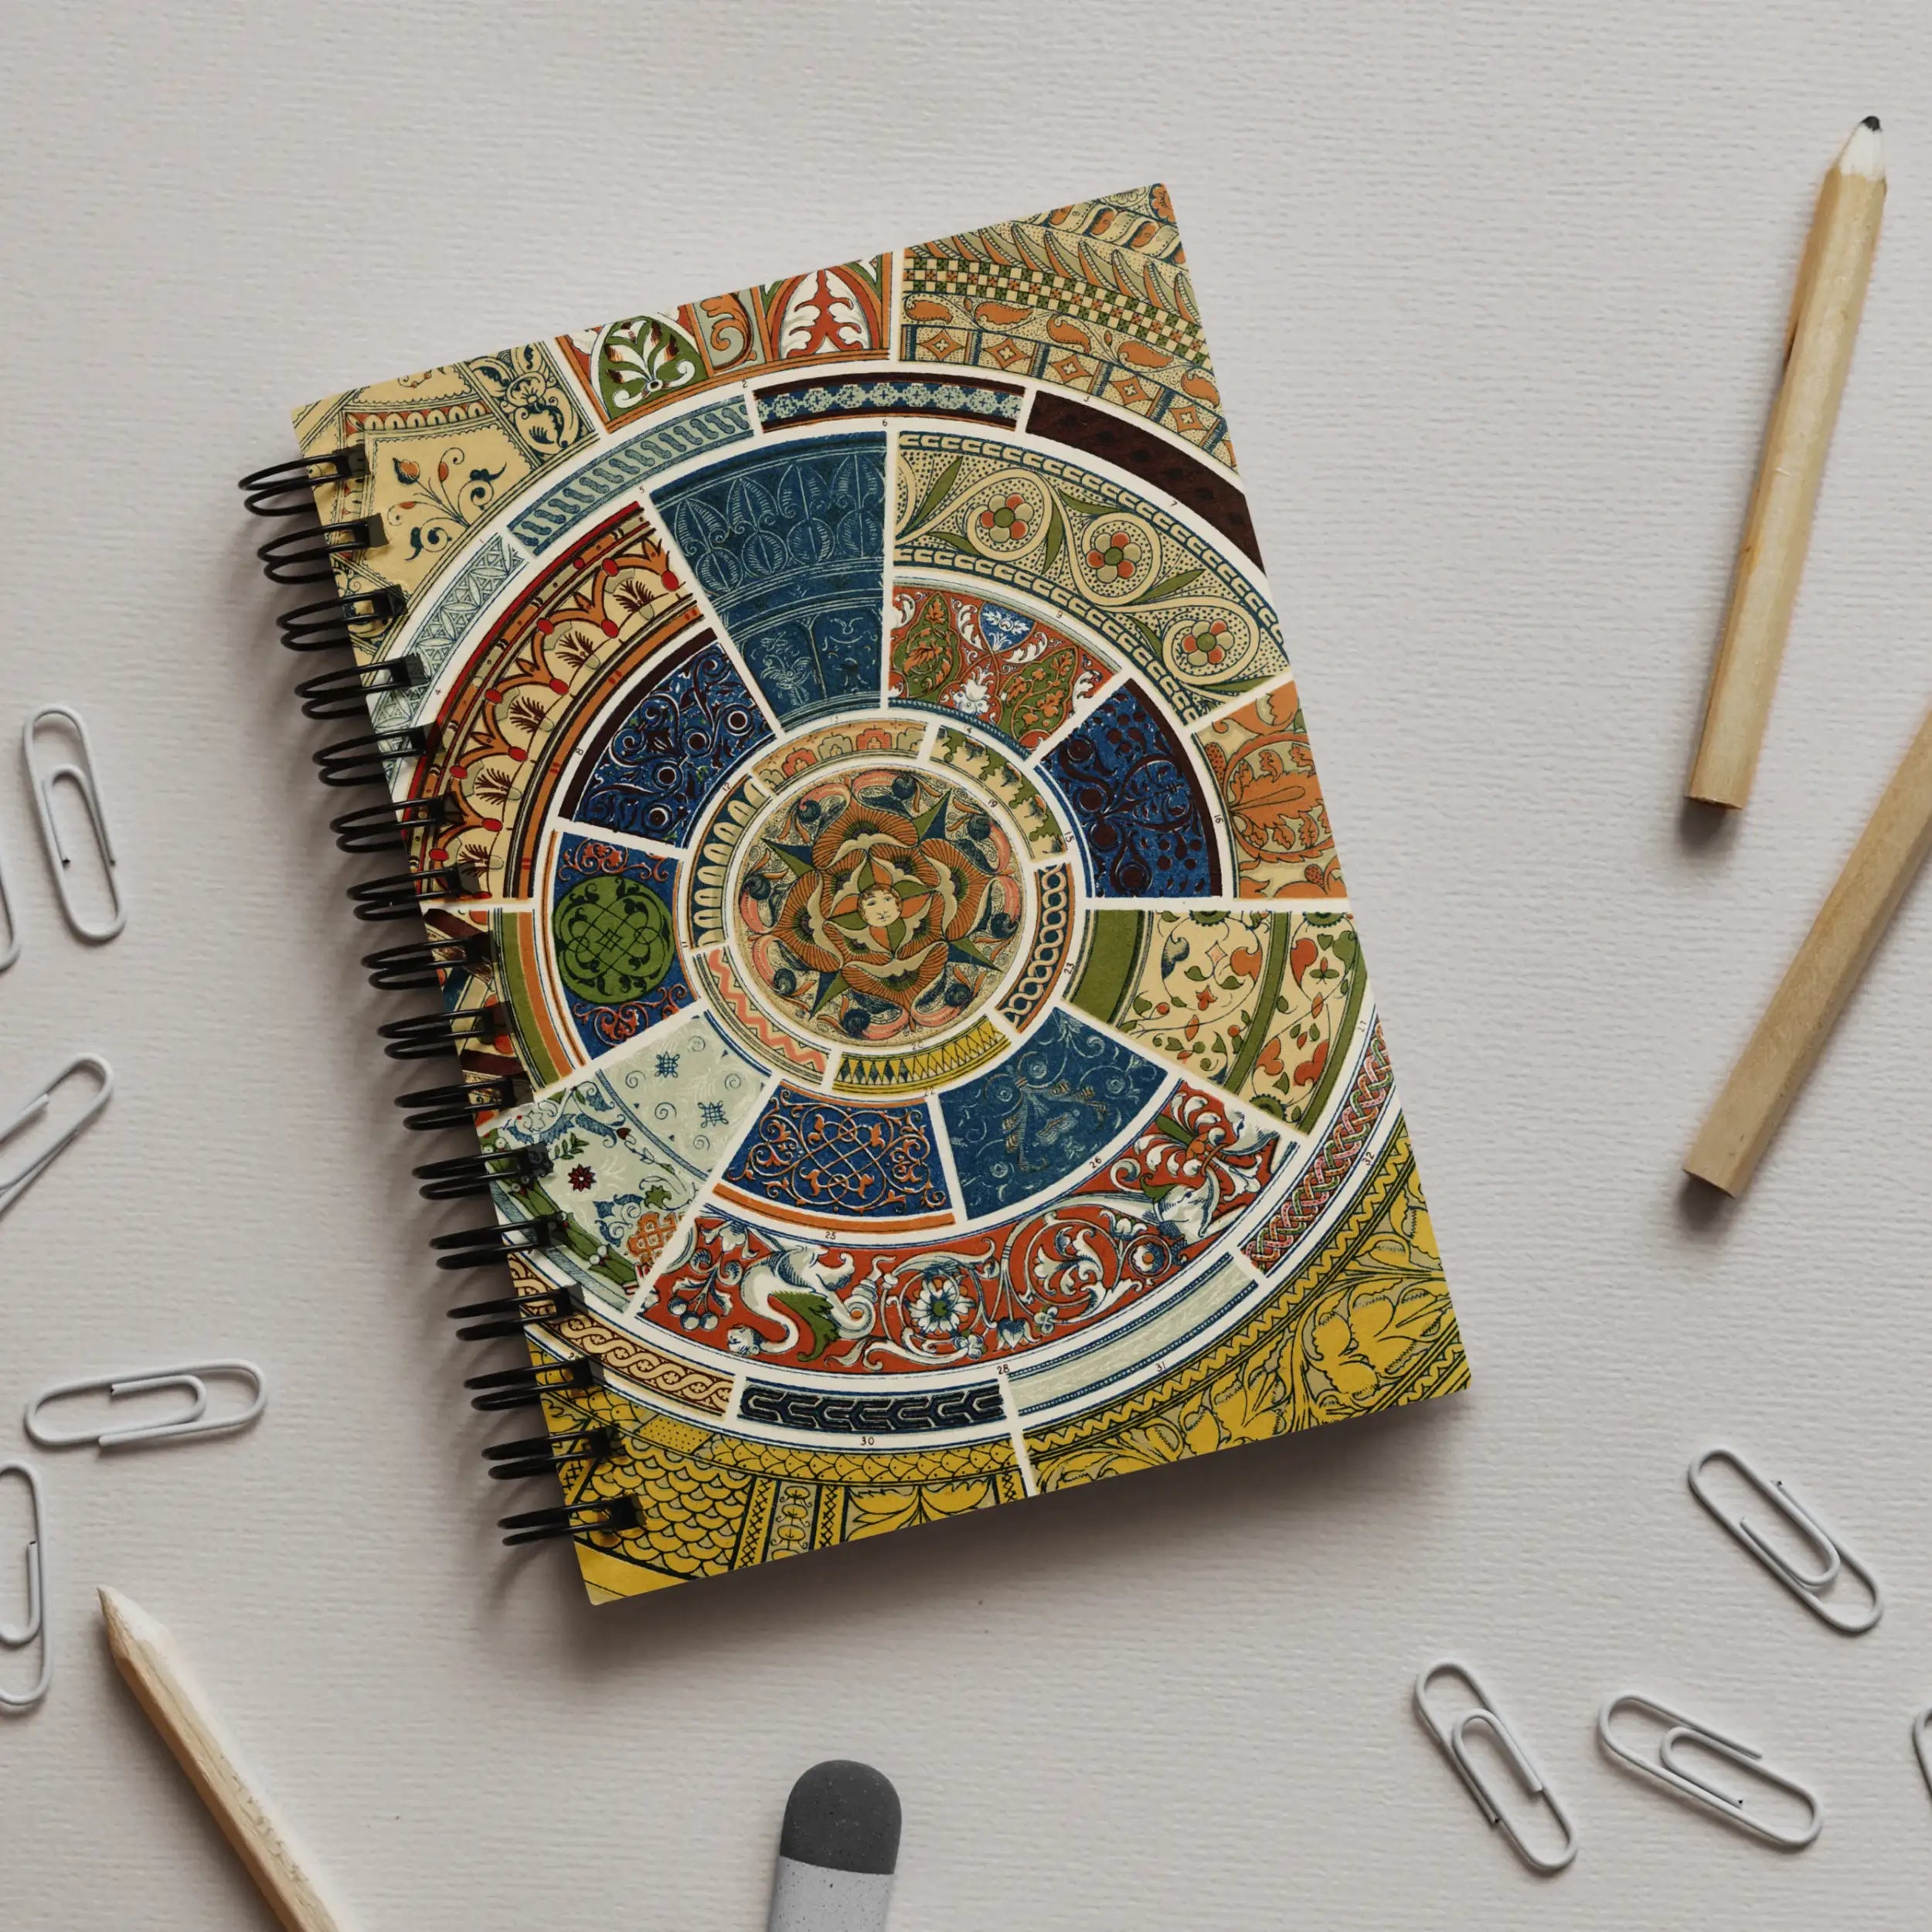 Another Grammar Of Ornament Pattern - Owen Jones Notebook - Notebooks & Notepads - Aesthetic Art